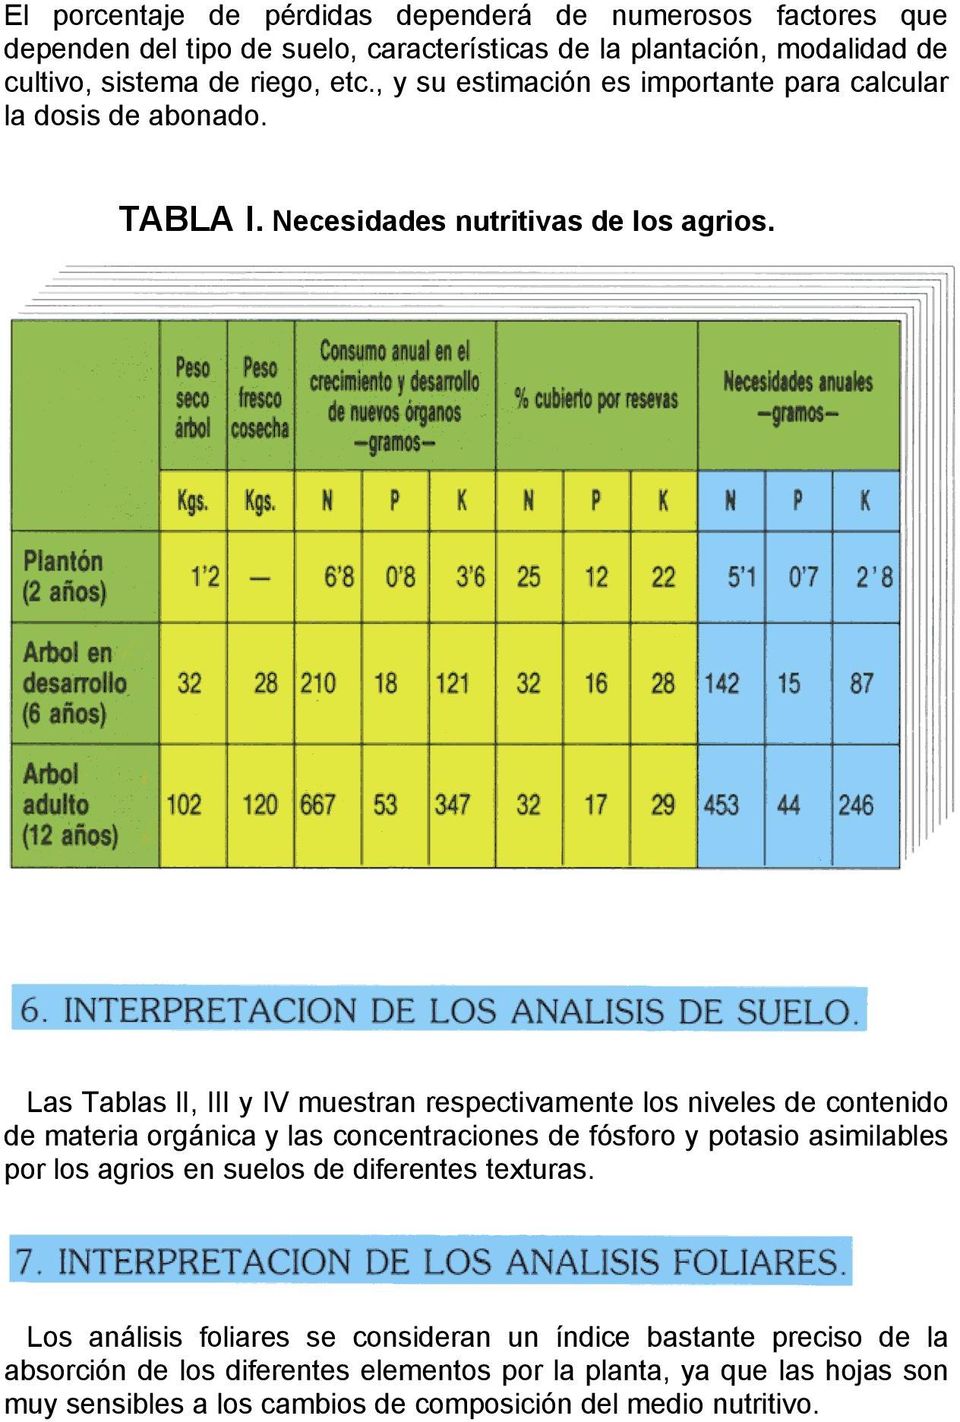 Las Tablas li, III y IV muestran respectivamente los niveles de contenido de materia orgánica y las concentraciones de fósforo y potasio asimilables por los agrios en